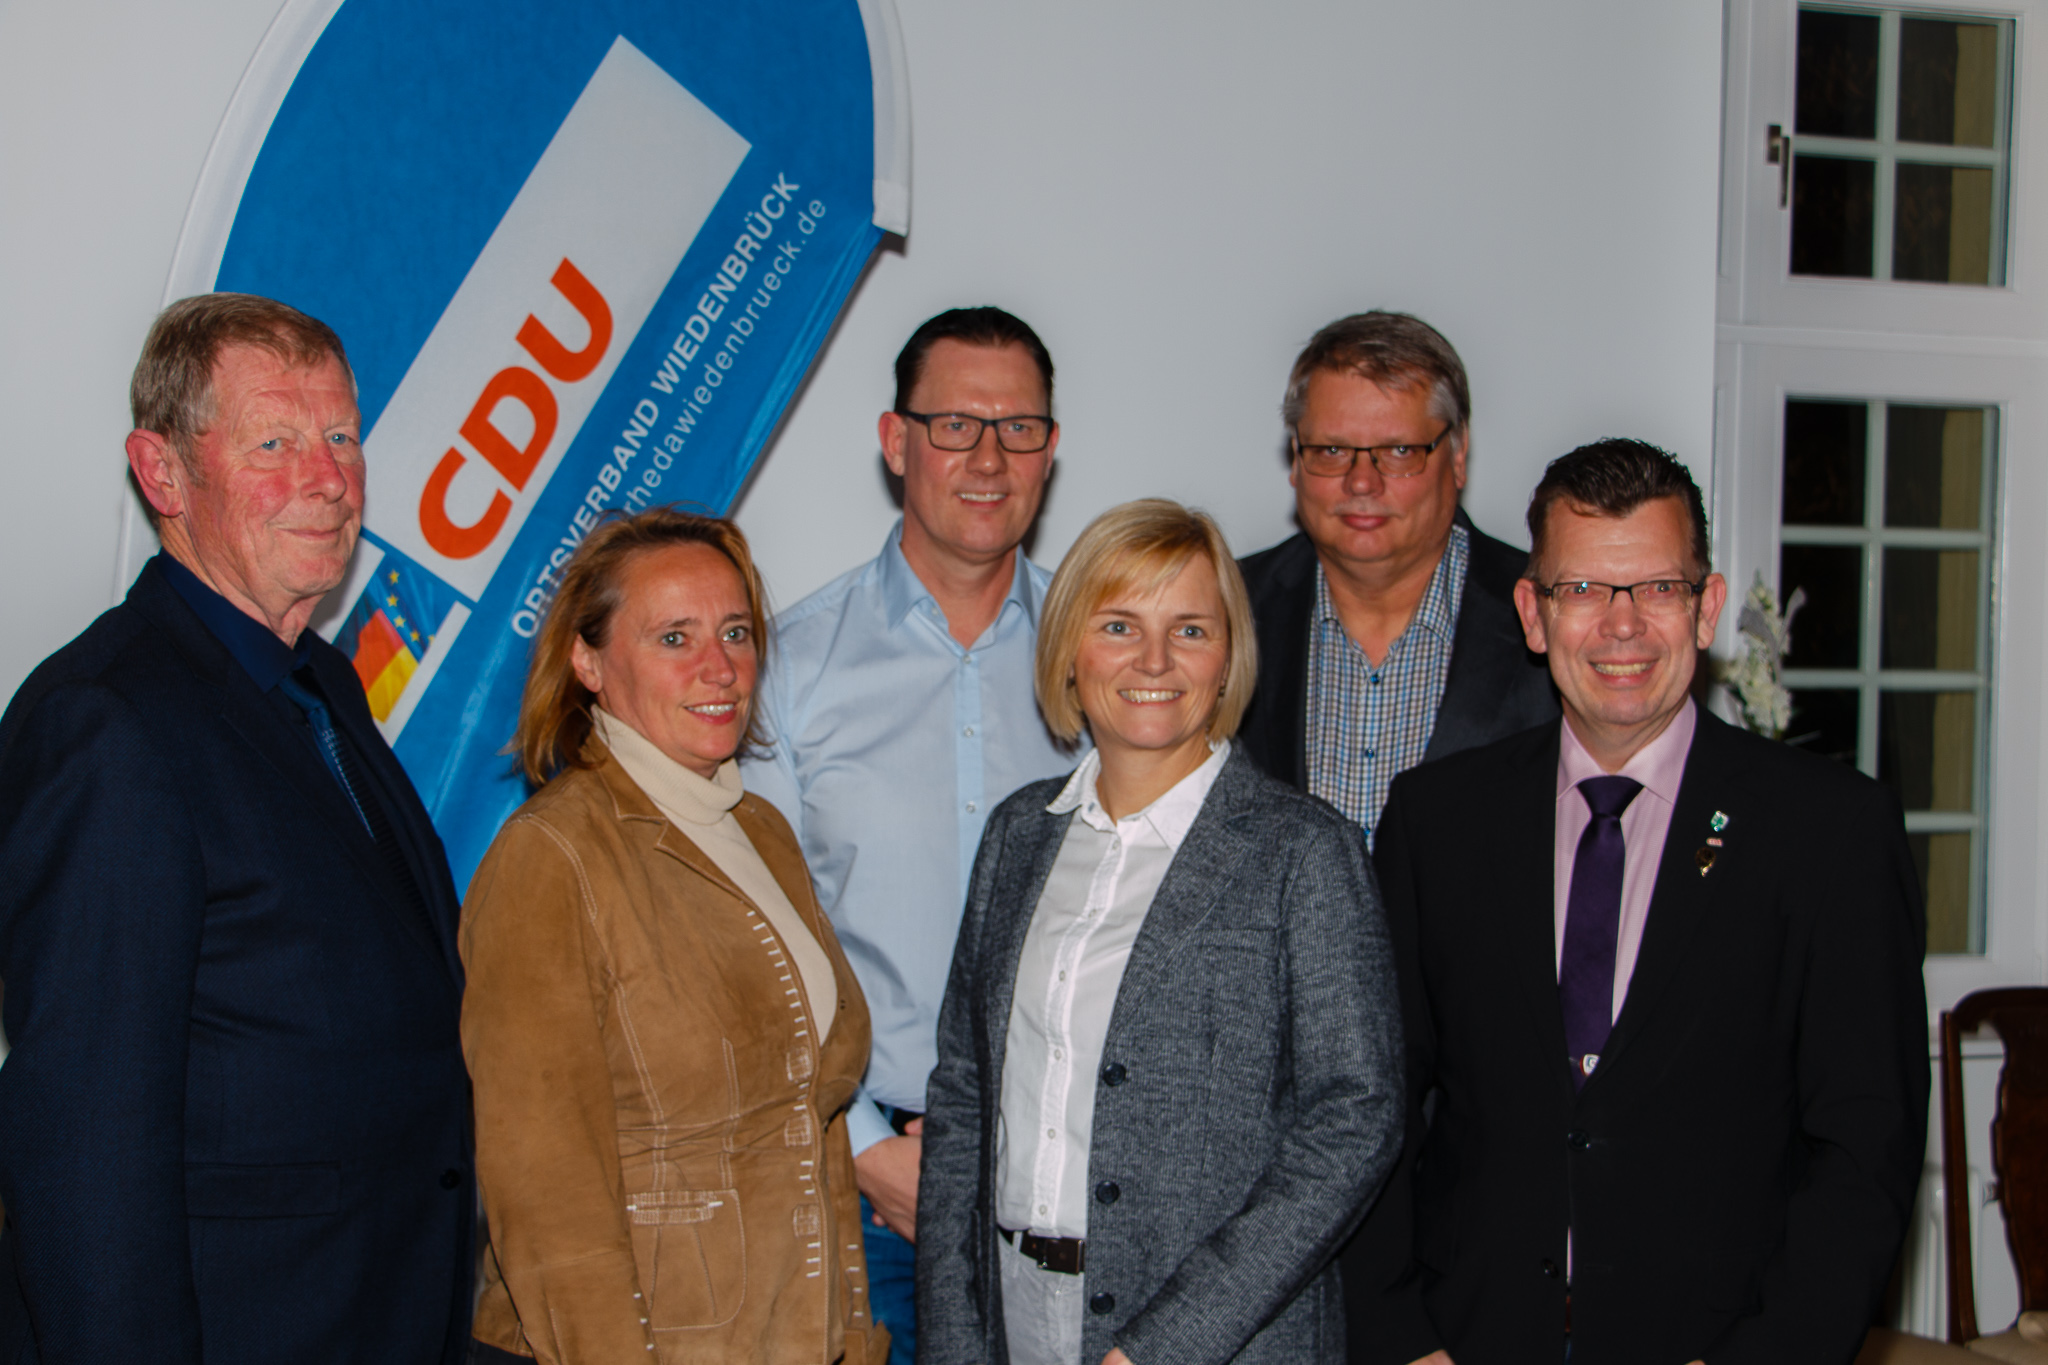 18.12.2018 - Hauptversammlung des CDU Ortsverband Wiedenbrück - 